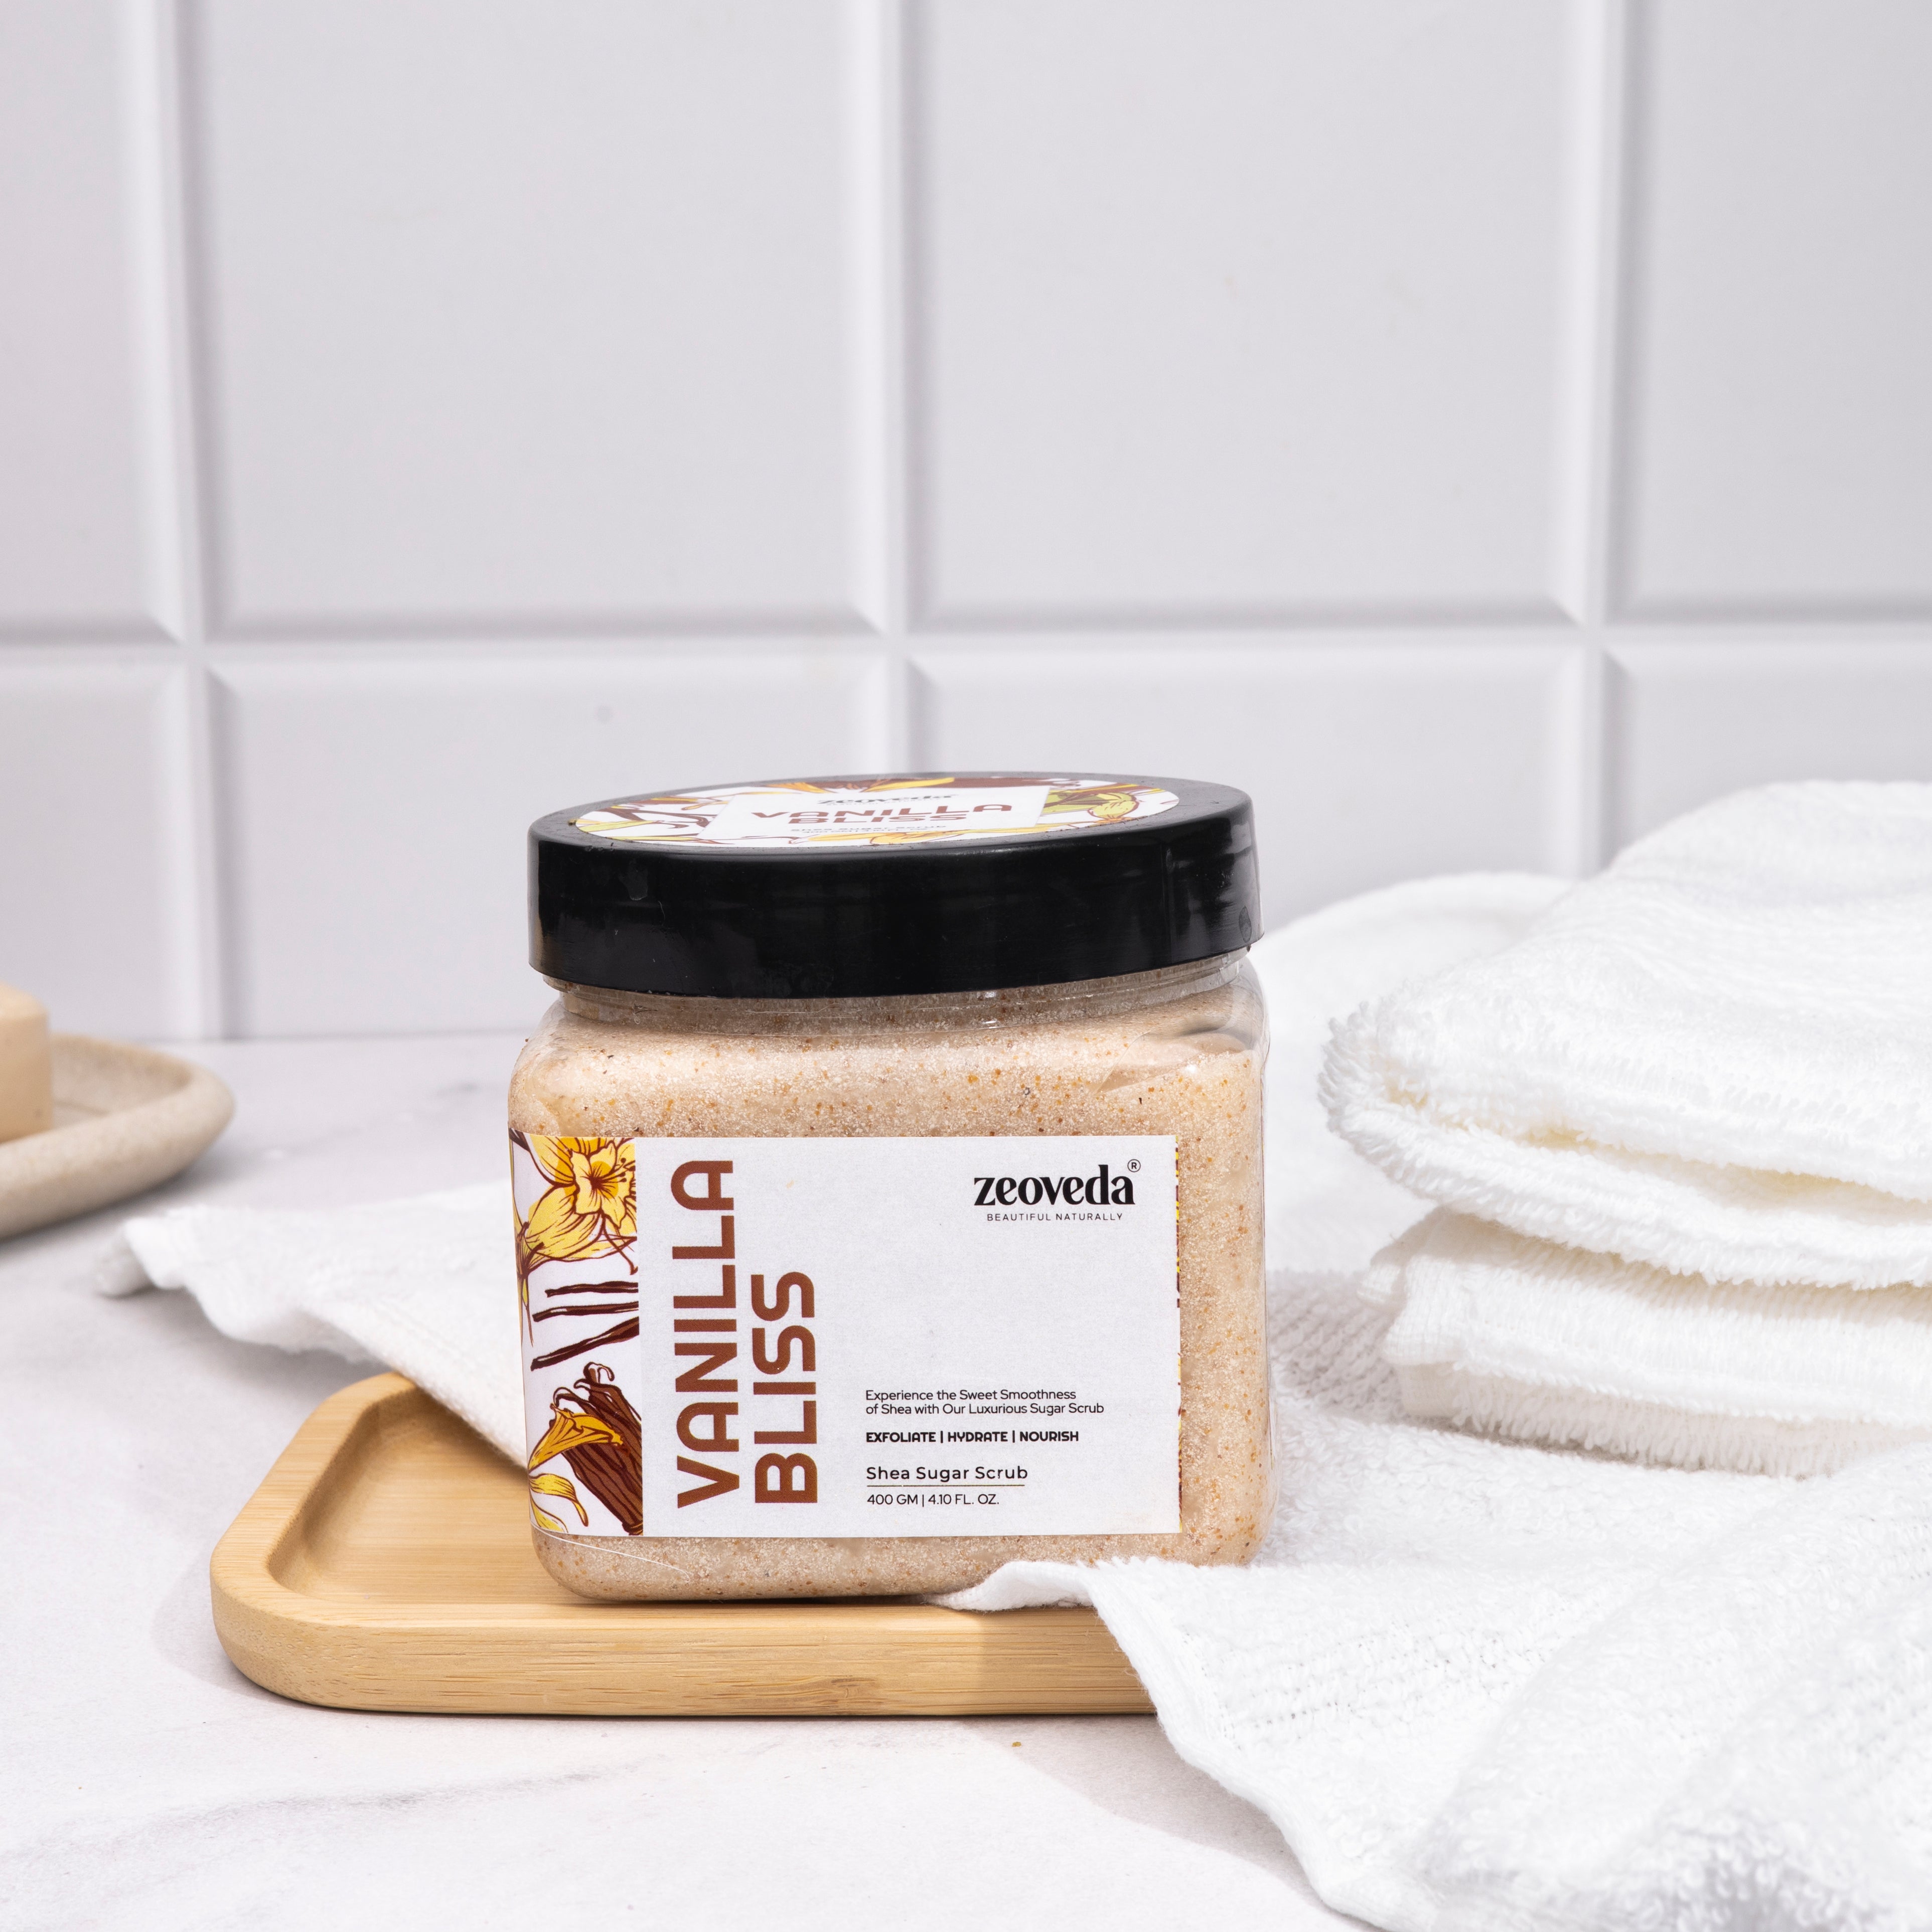 Vanilla Bliss Shea Sugar Exfoliating Scrub For Gentle Cleansing | Luxury Body Scrub for Enhanced Glow - 400gm